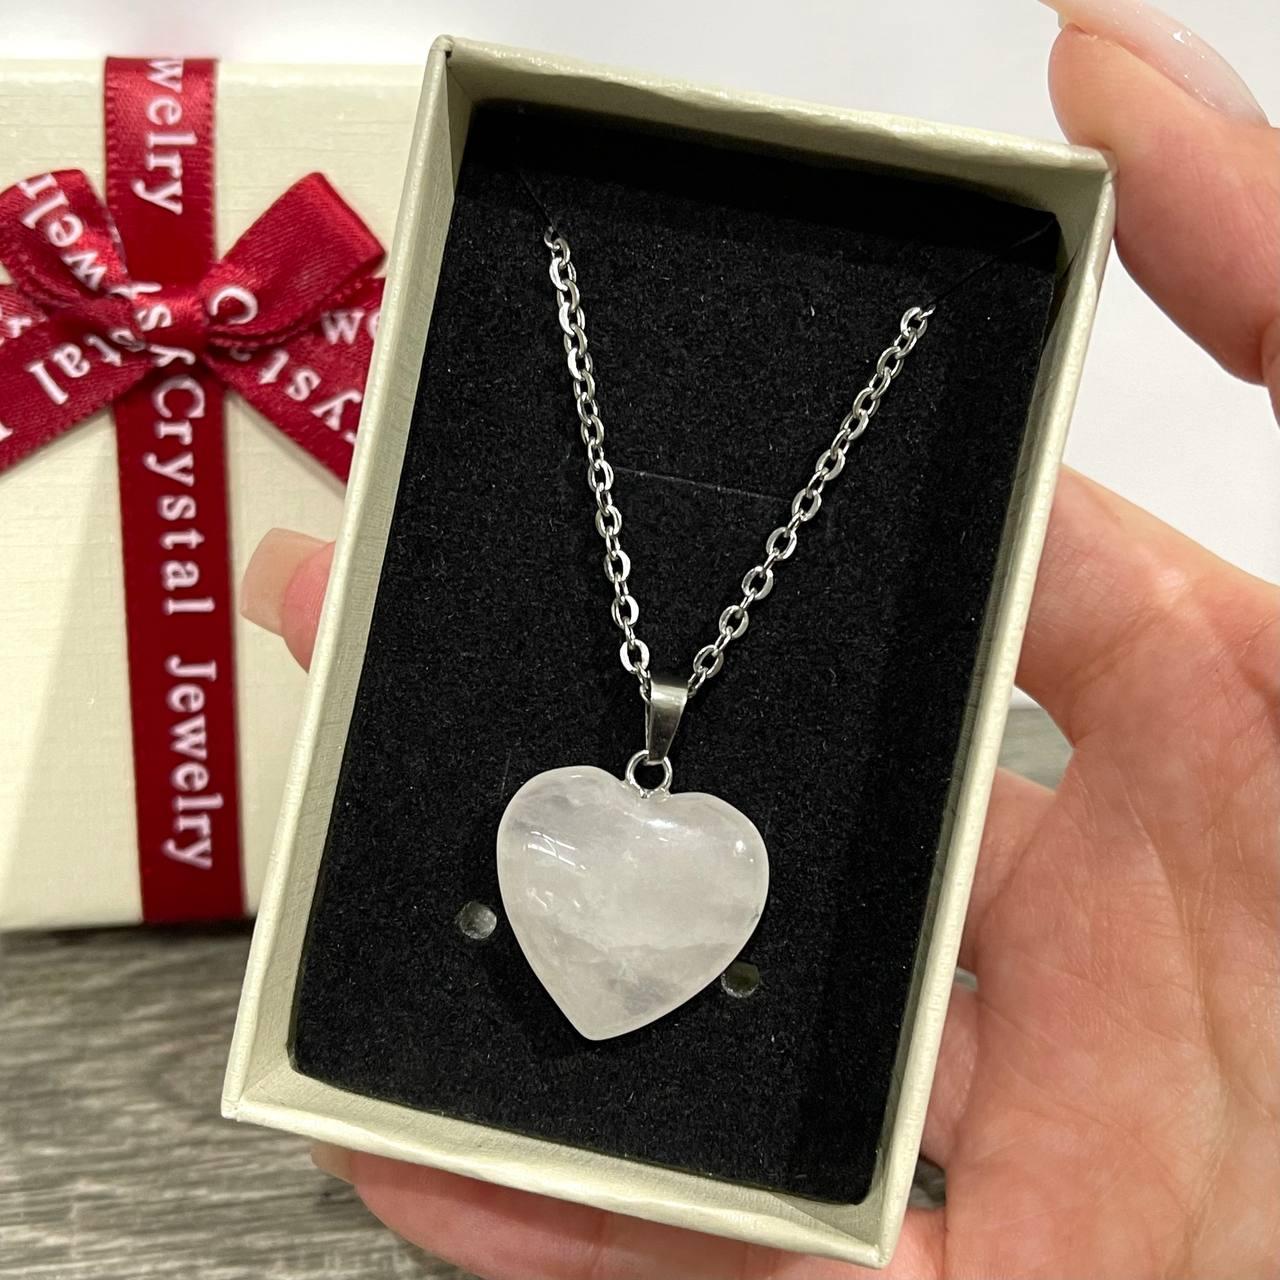 Натуральний камінь Рожевий кварц кулон у формі сердечка на ланцюжку - оригінальний подарунок дівчині в коробочці